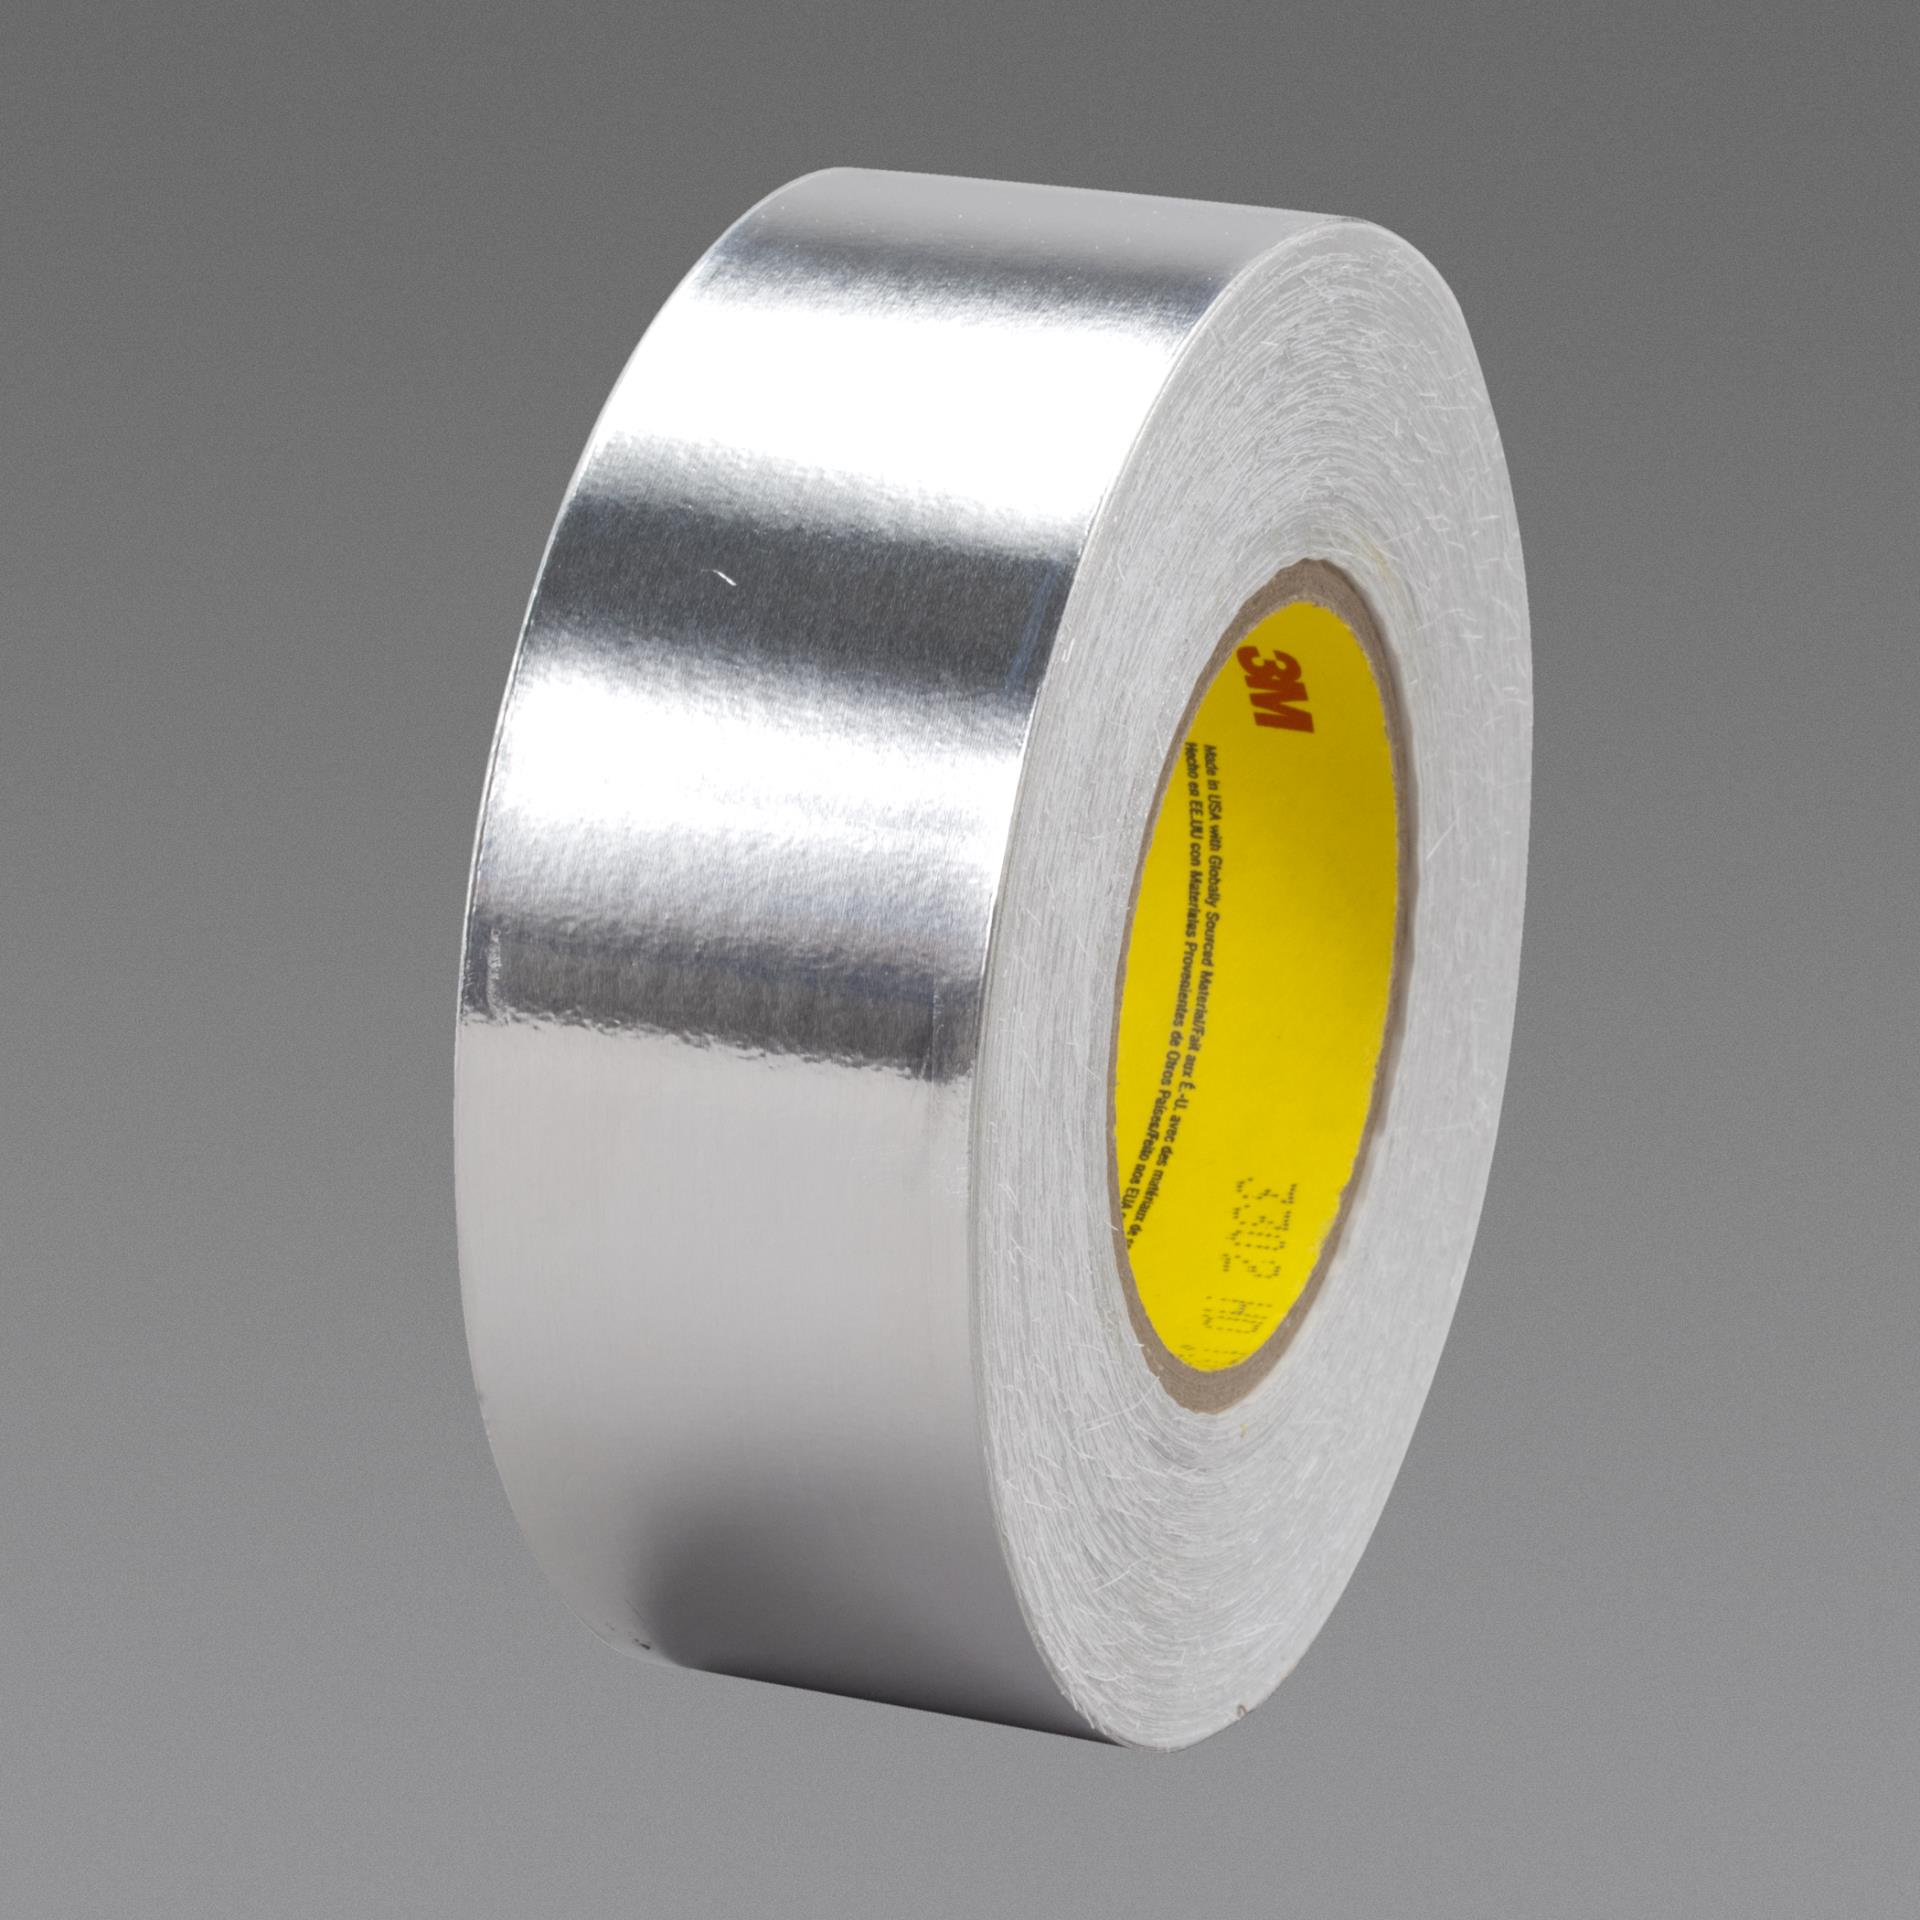 3 ROLLS Aluminium foil insulation tape 40mm x 50m 